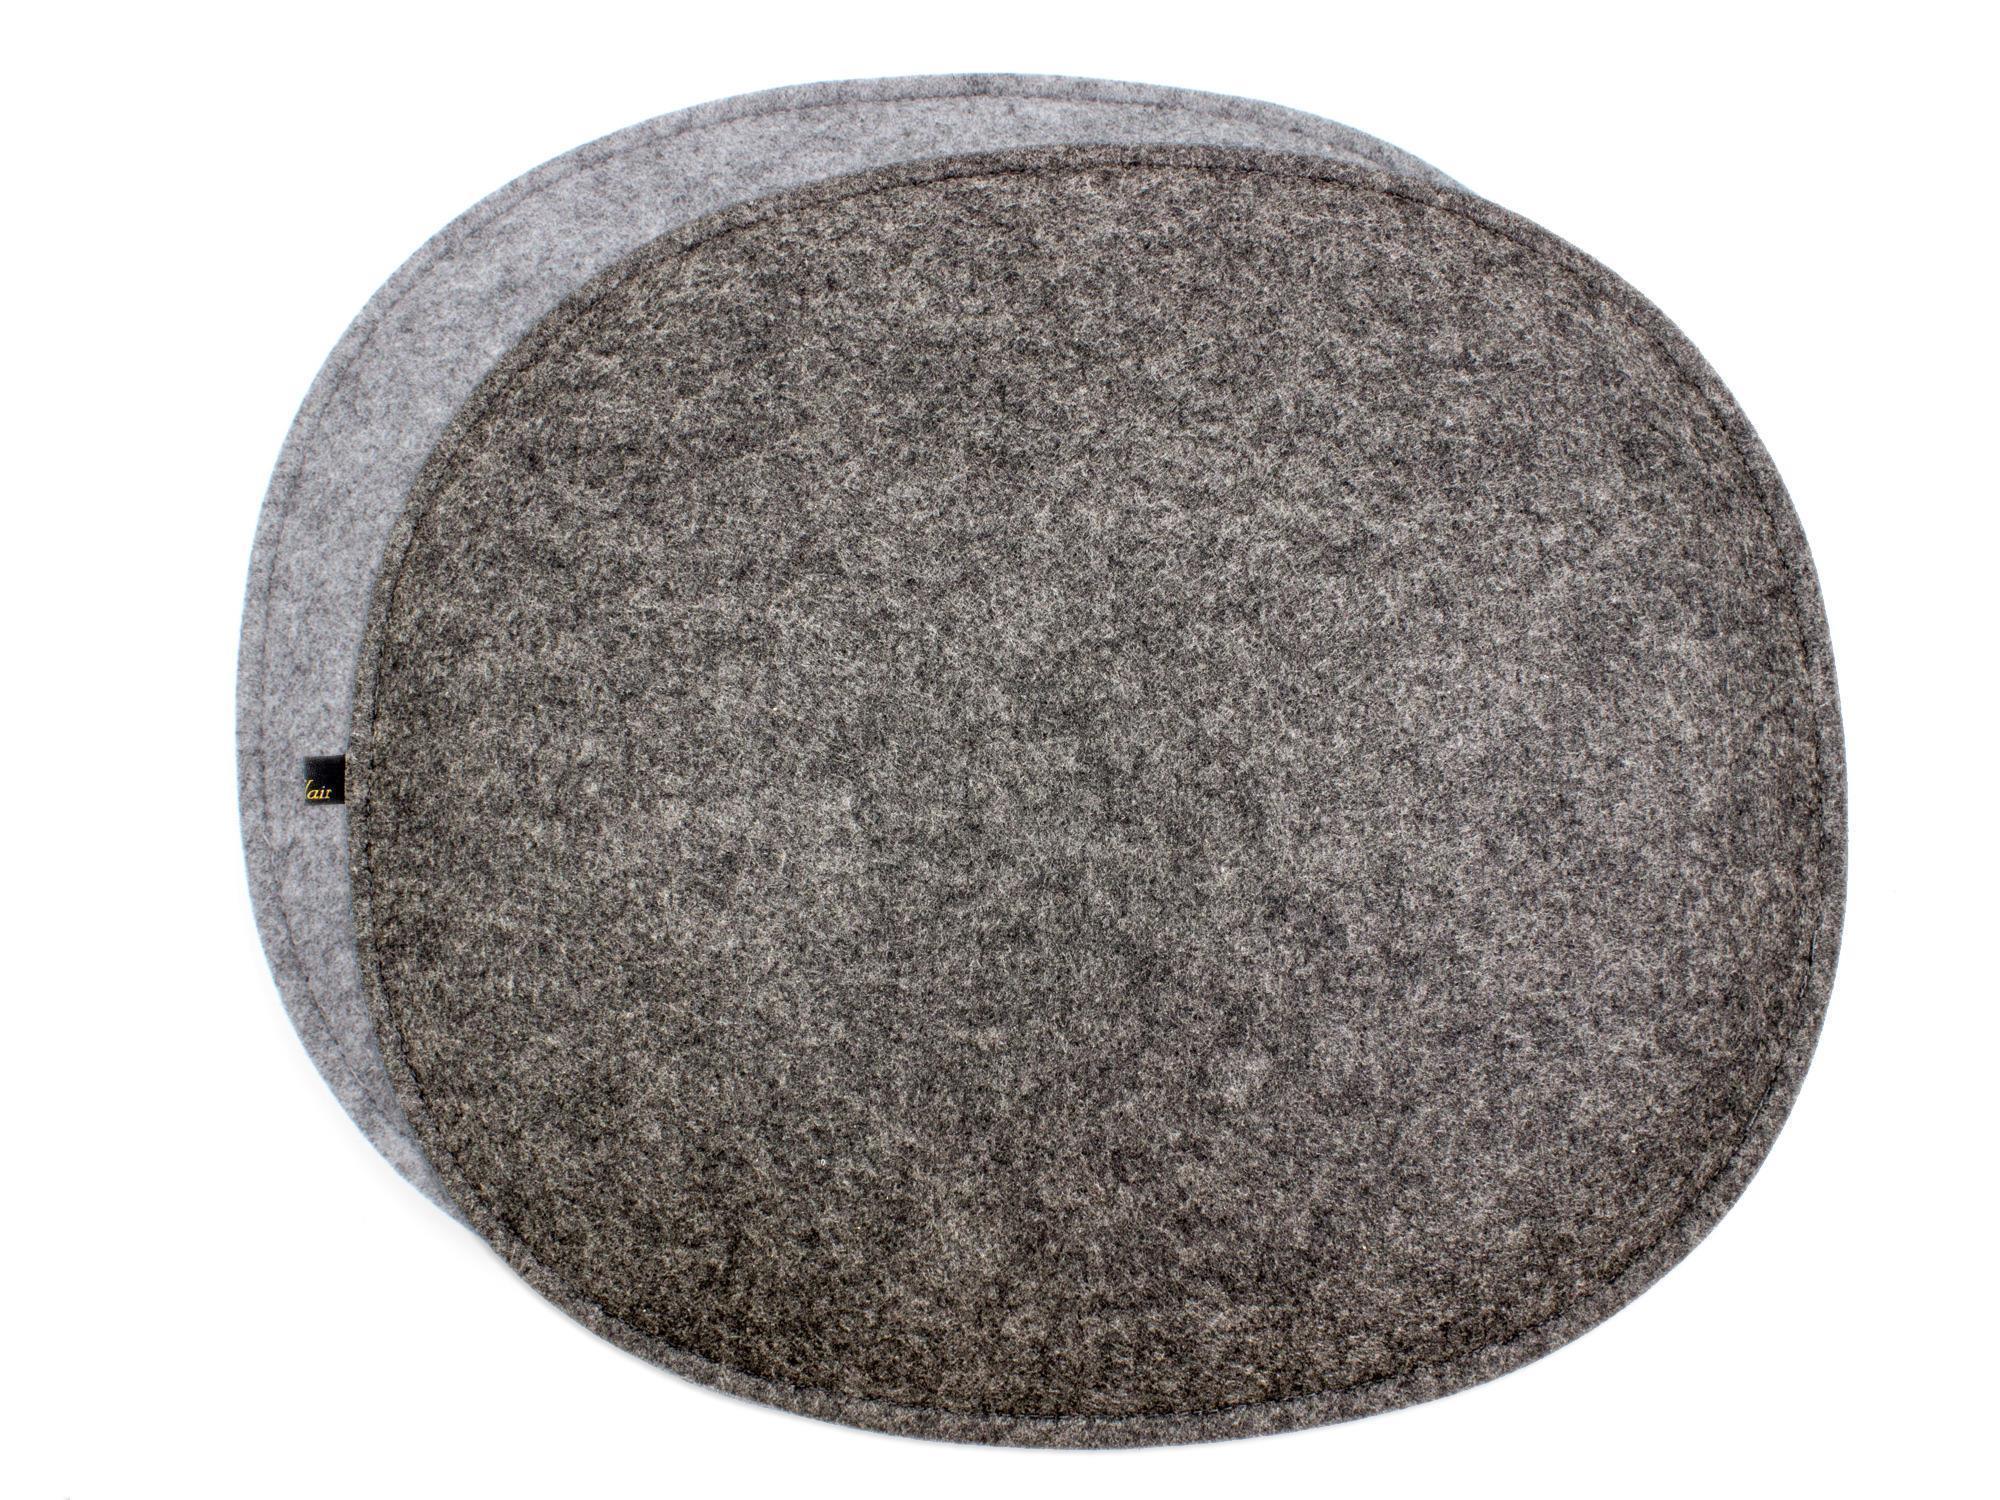 Filz Sitzkissen oval für Eames in dunkelgrau und graumeliert (LX2147)